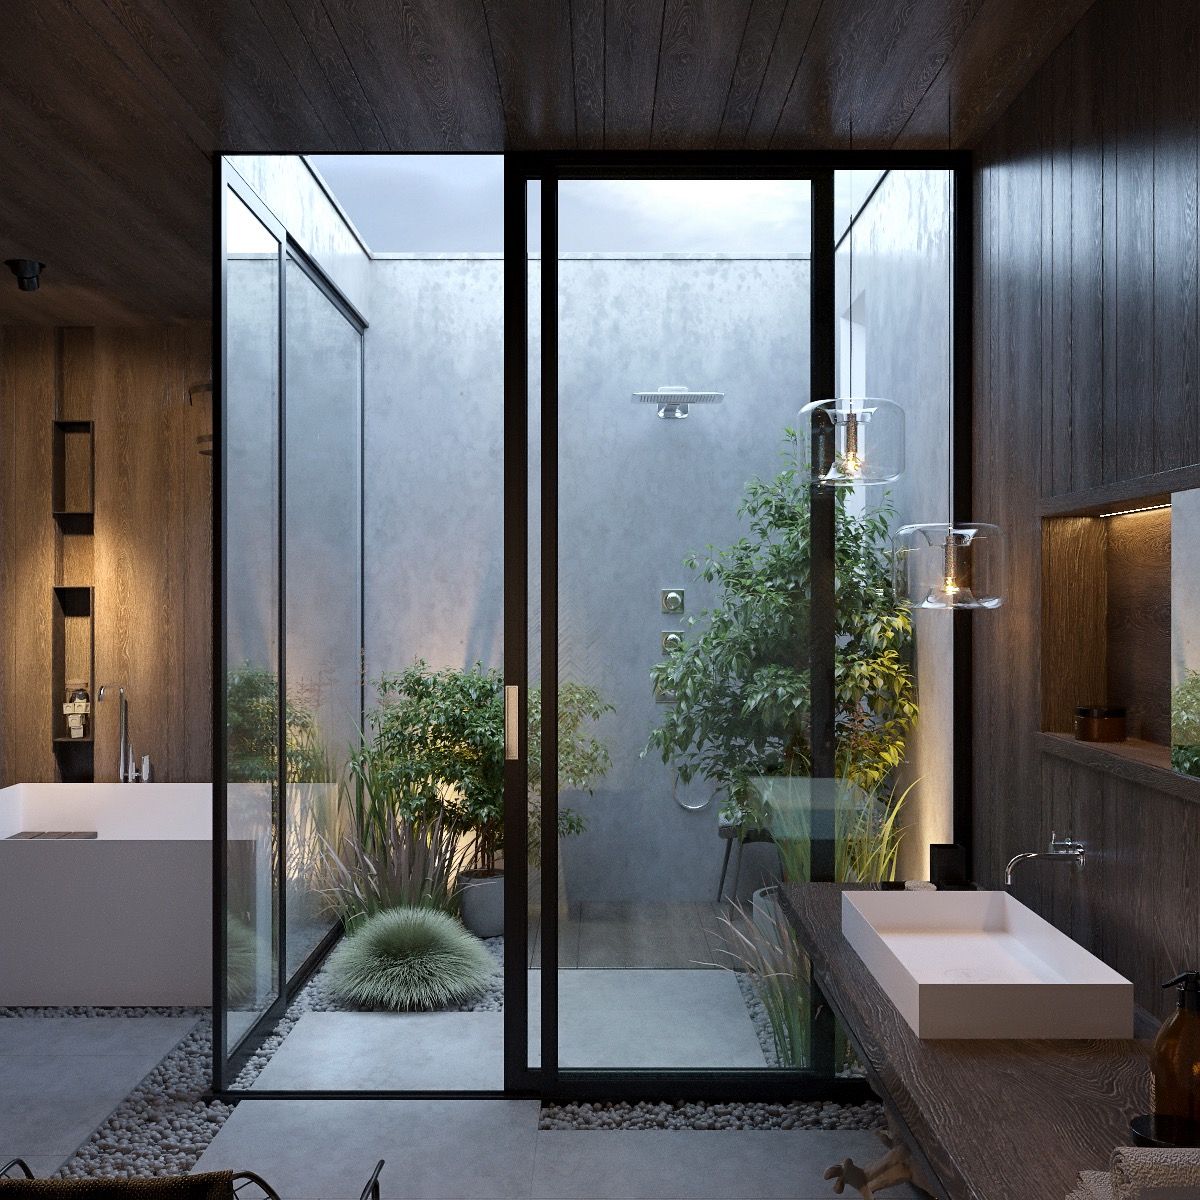 Desain ruang mandi/home designing